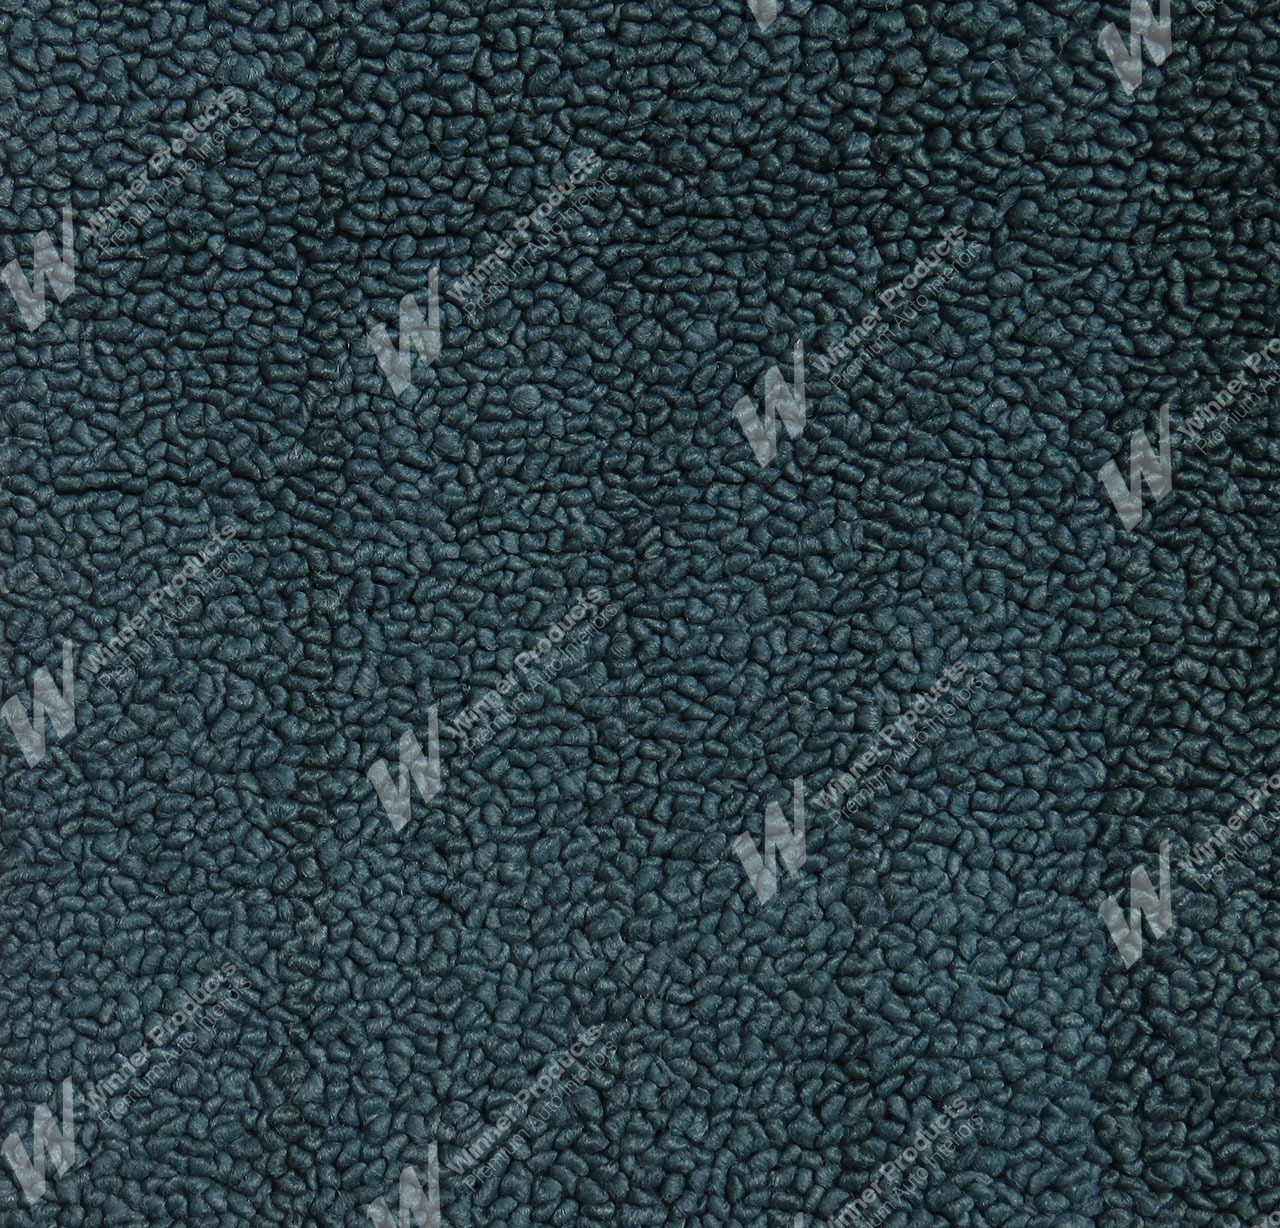 Holden Premier HT Premier Sedan 13R Turquoise Mist Carpet (Image 1 of 1)